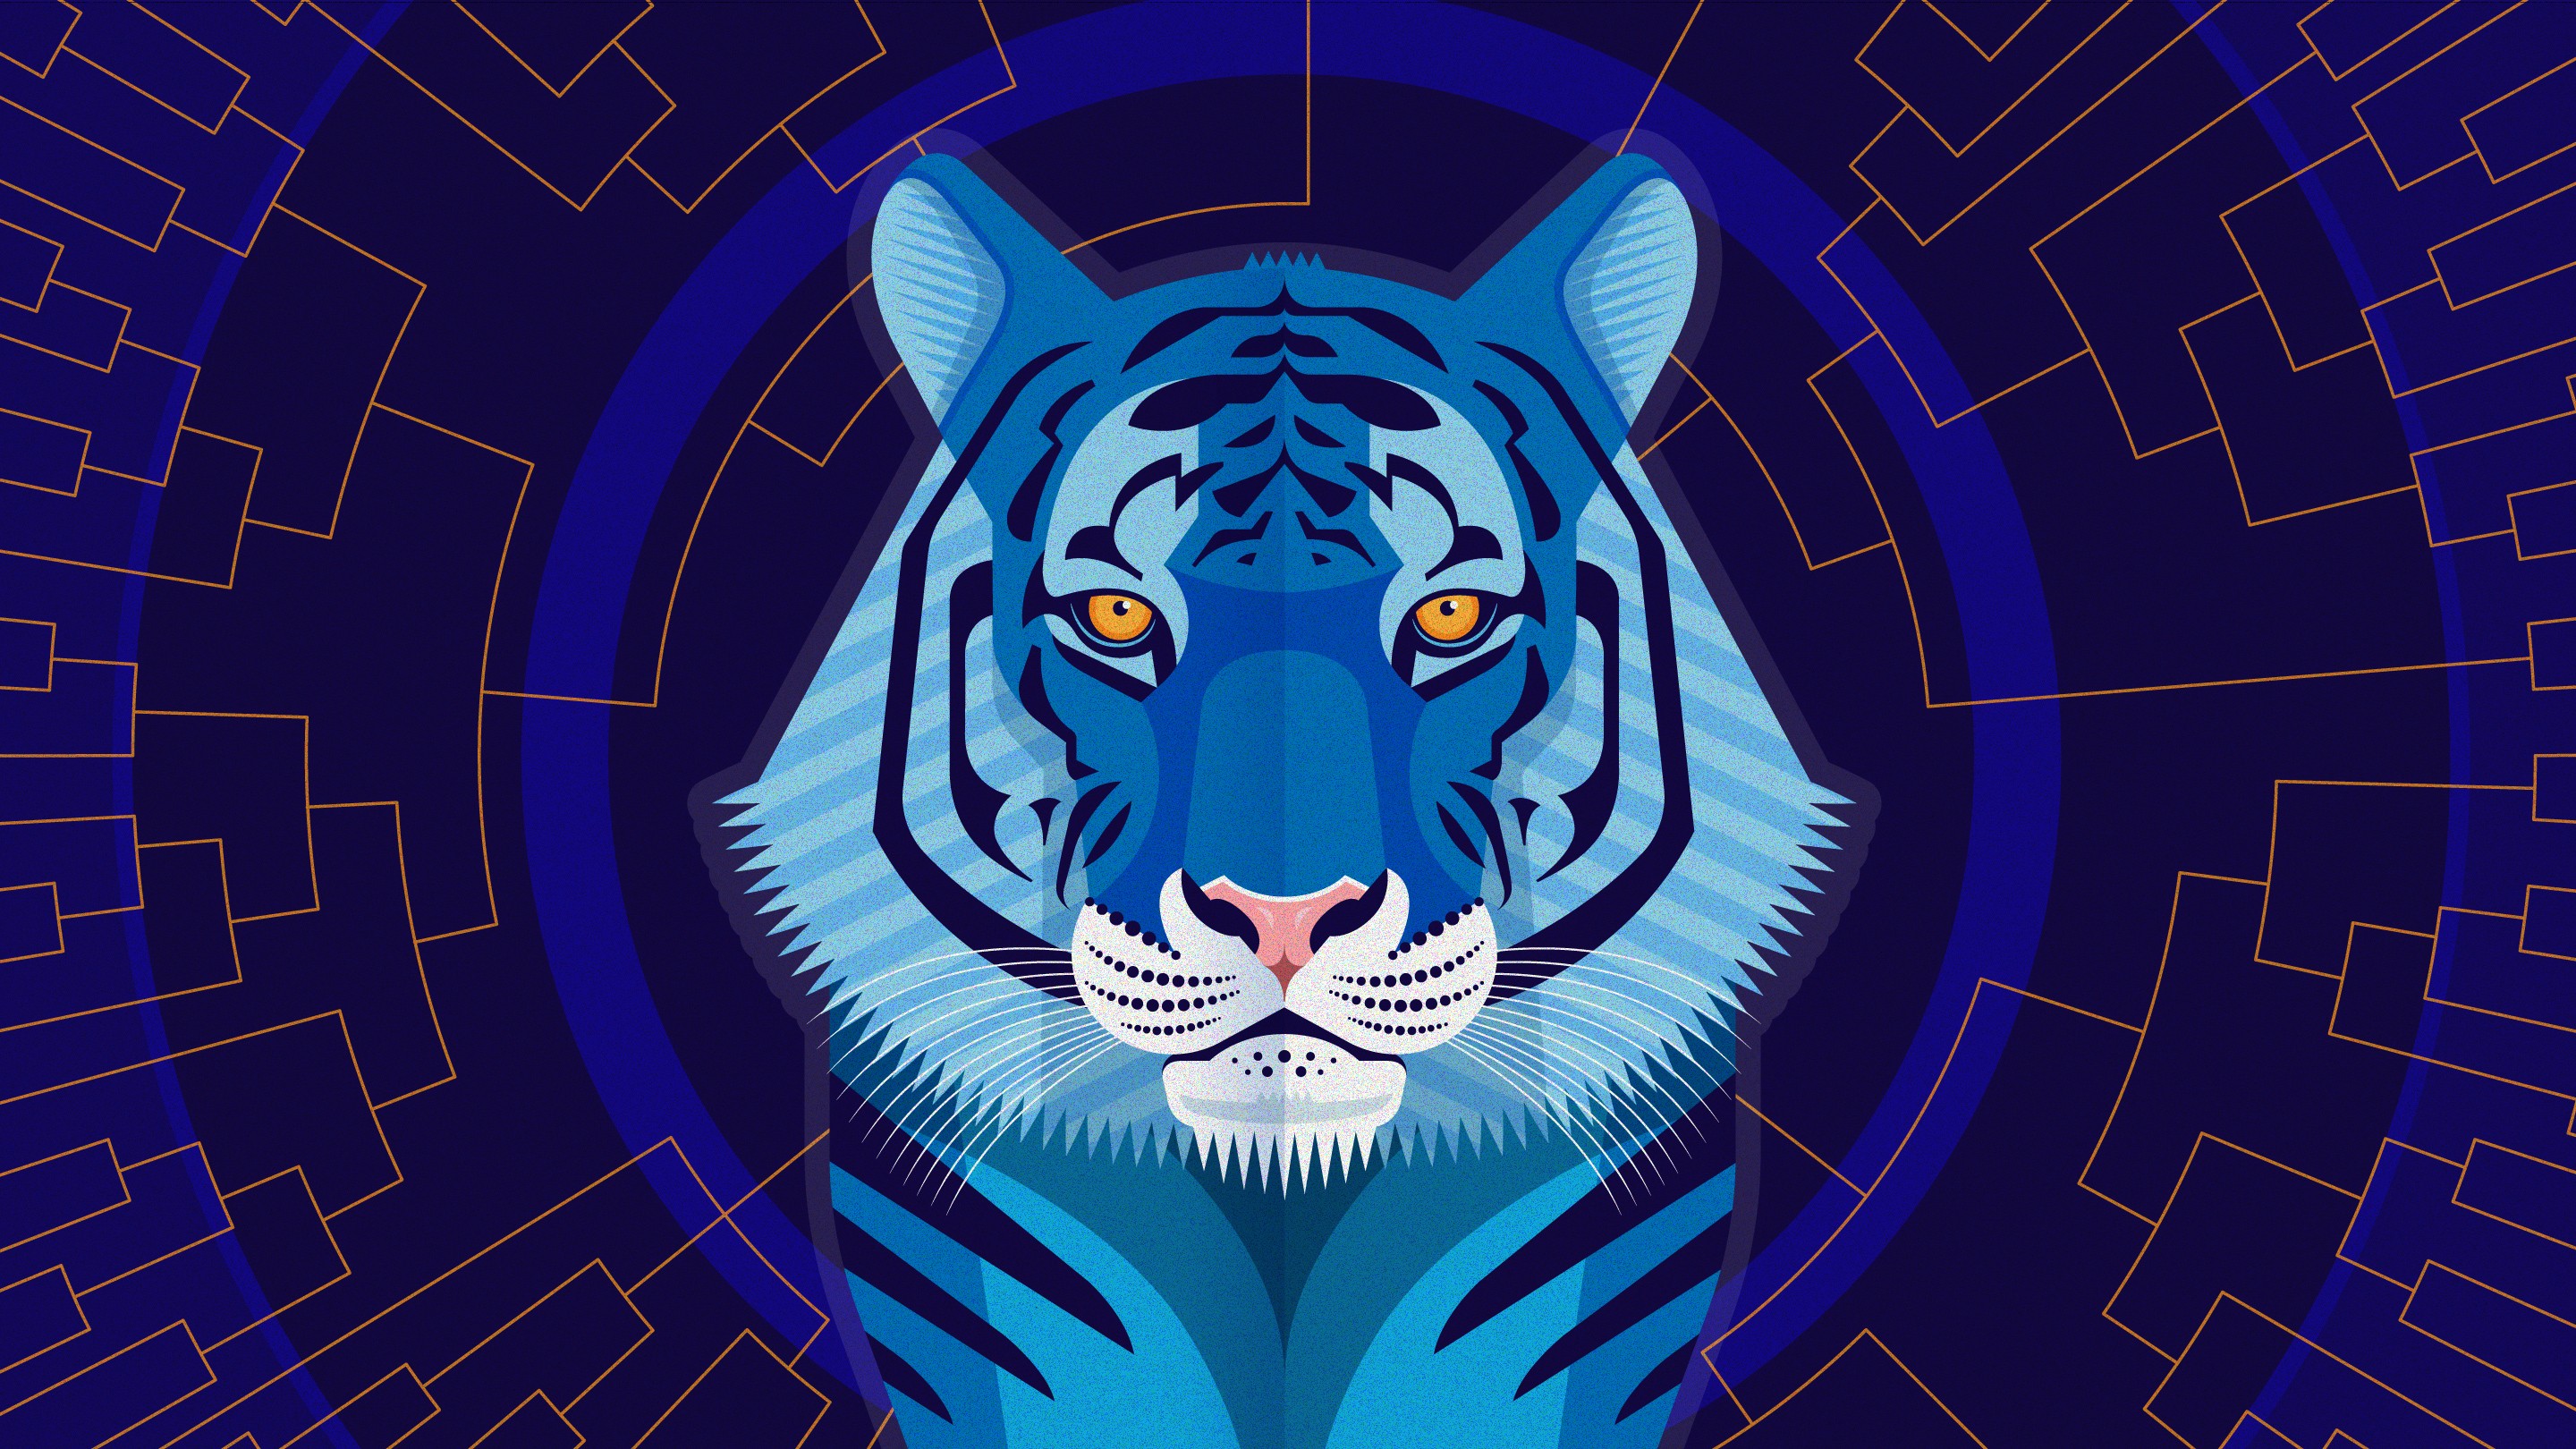 Fantasy Tiger best wallpaper